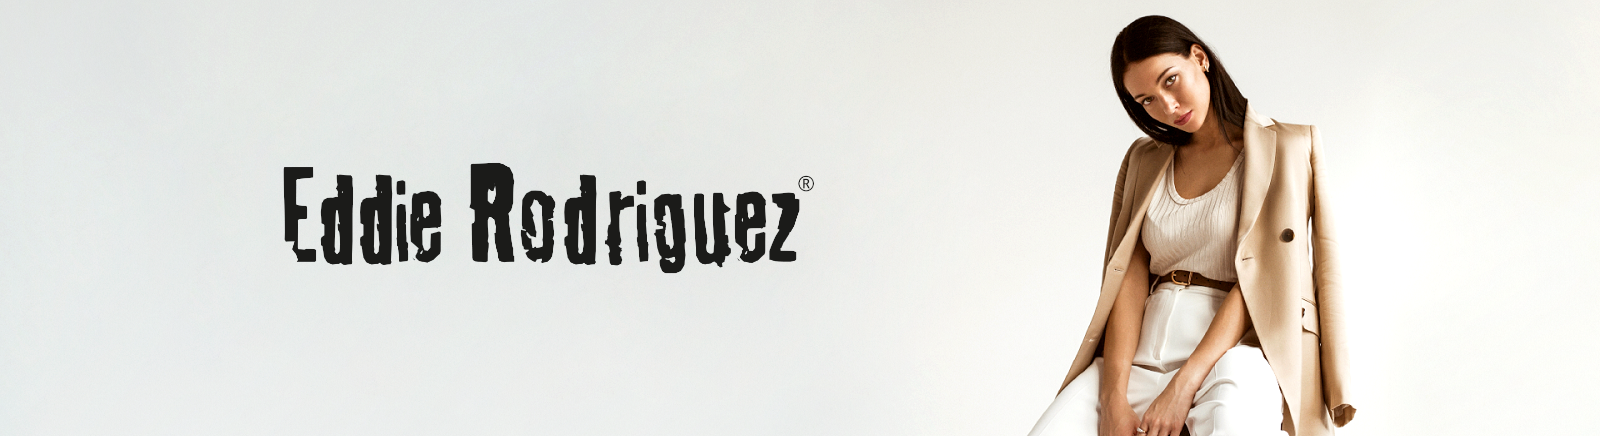 Juppen: Eddie Rodriguez Sandalen für Damen kaufen online shoppen